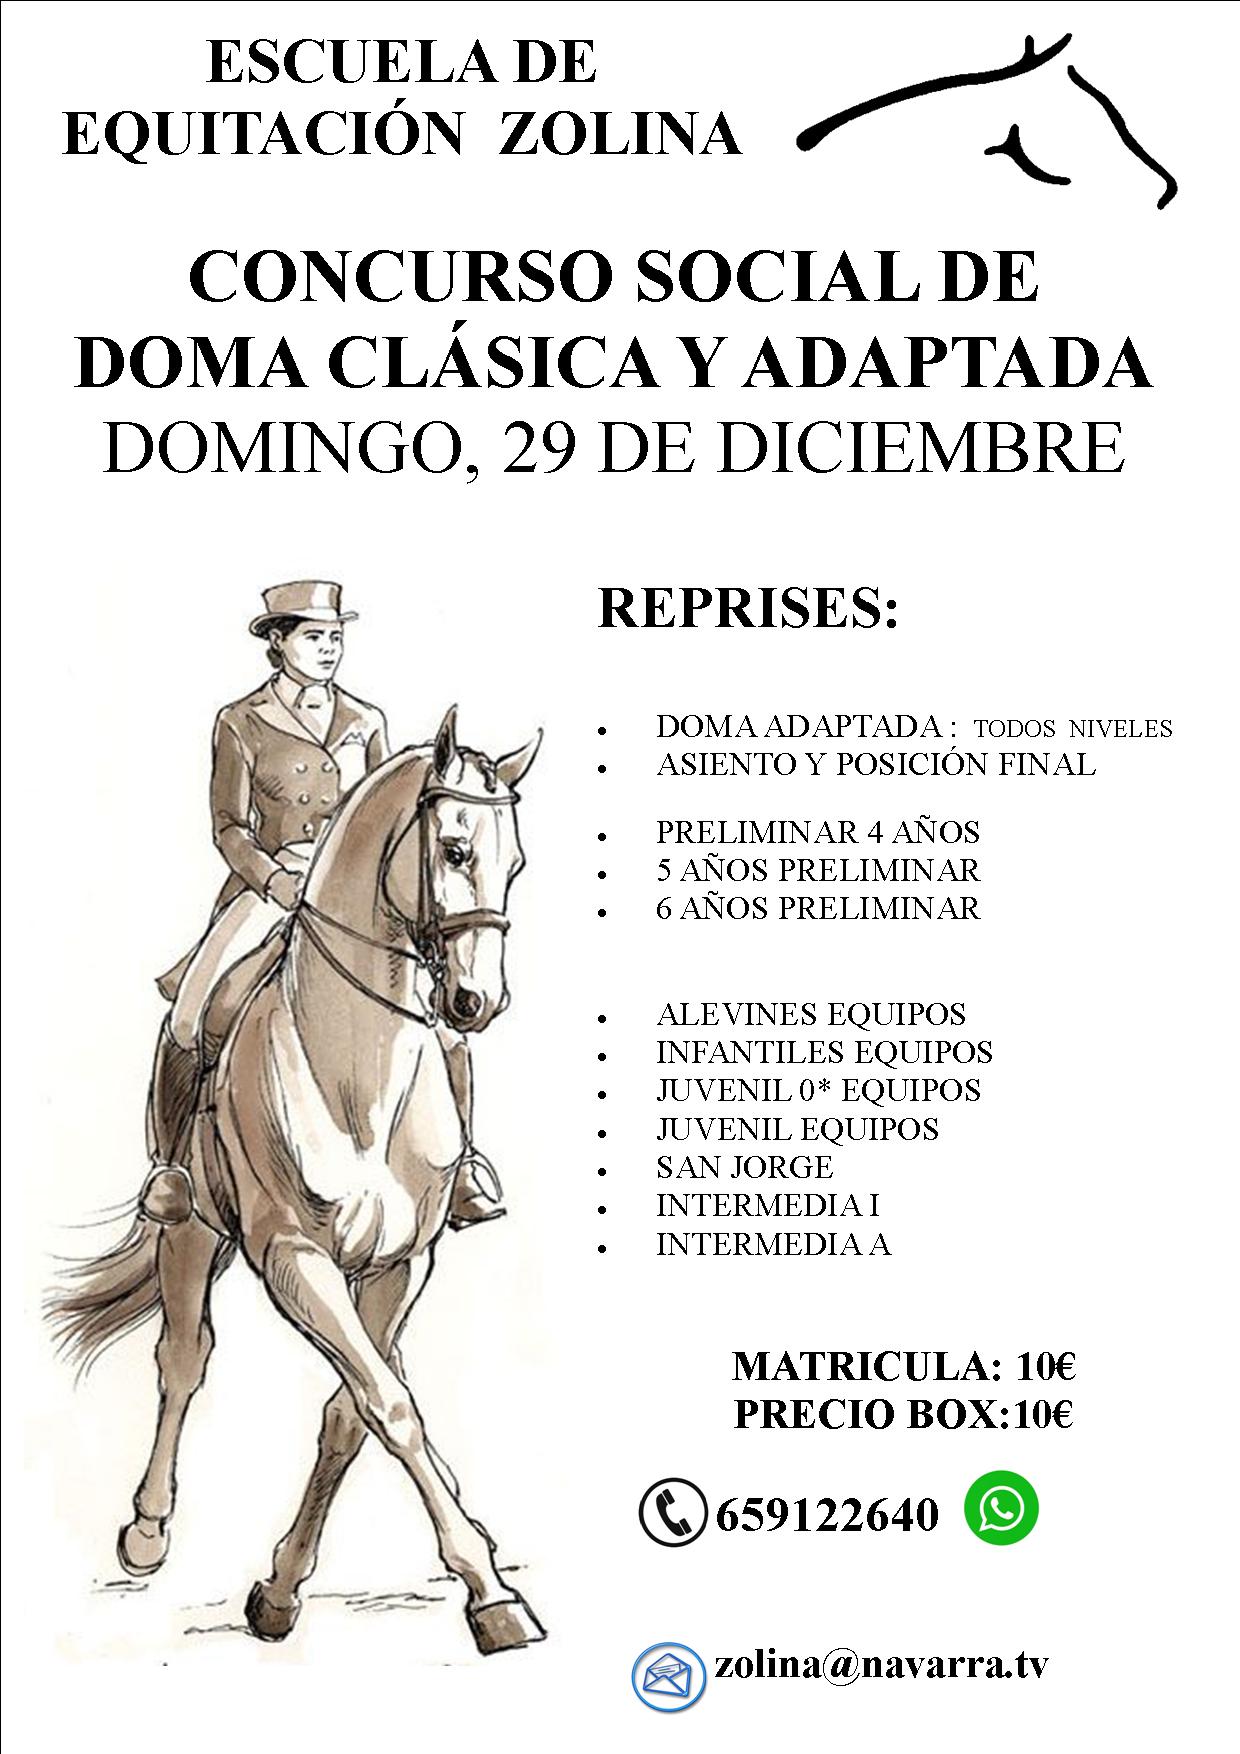 Concurso Social de Doma Clásica y Doma Adaptada el 29 de diciembre en Zolina